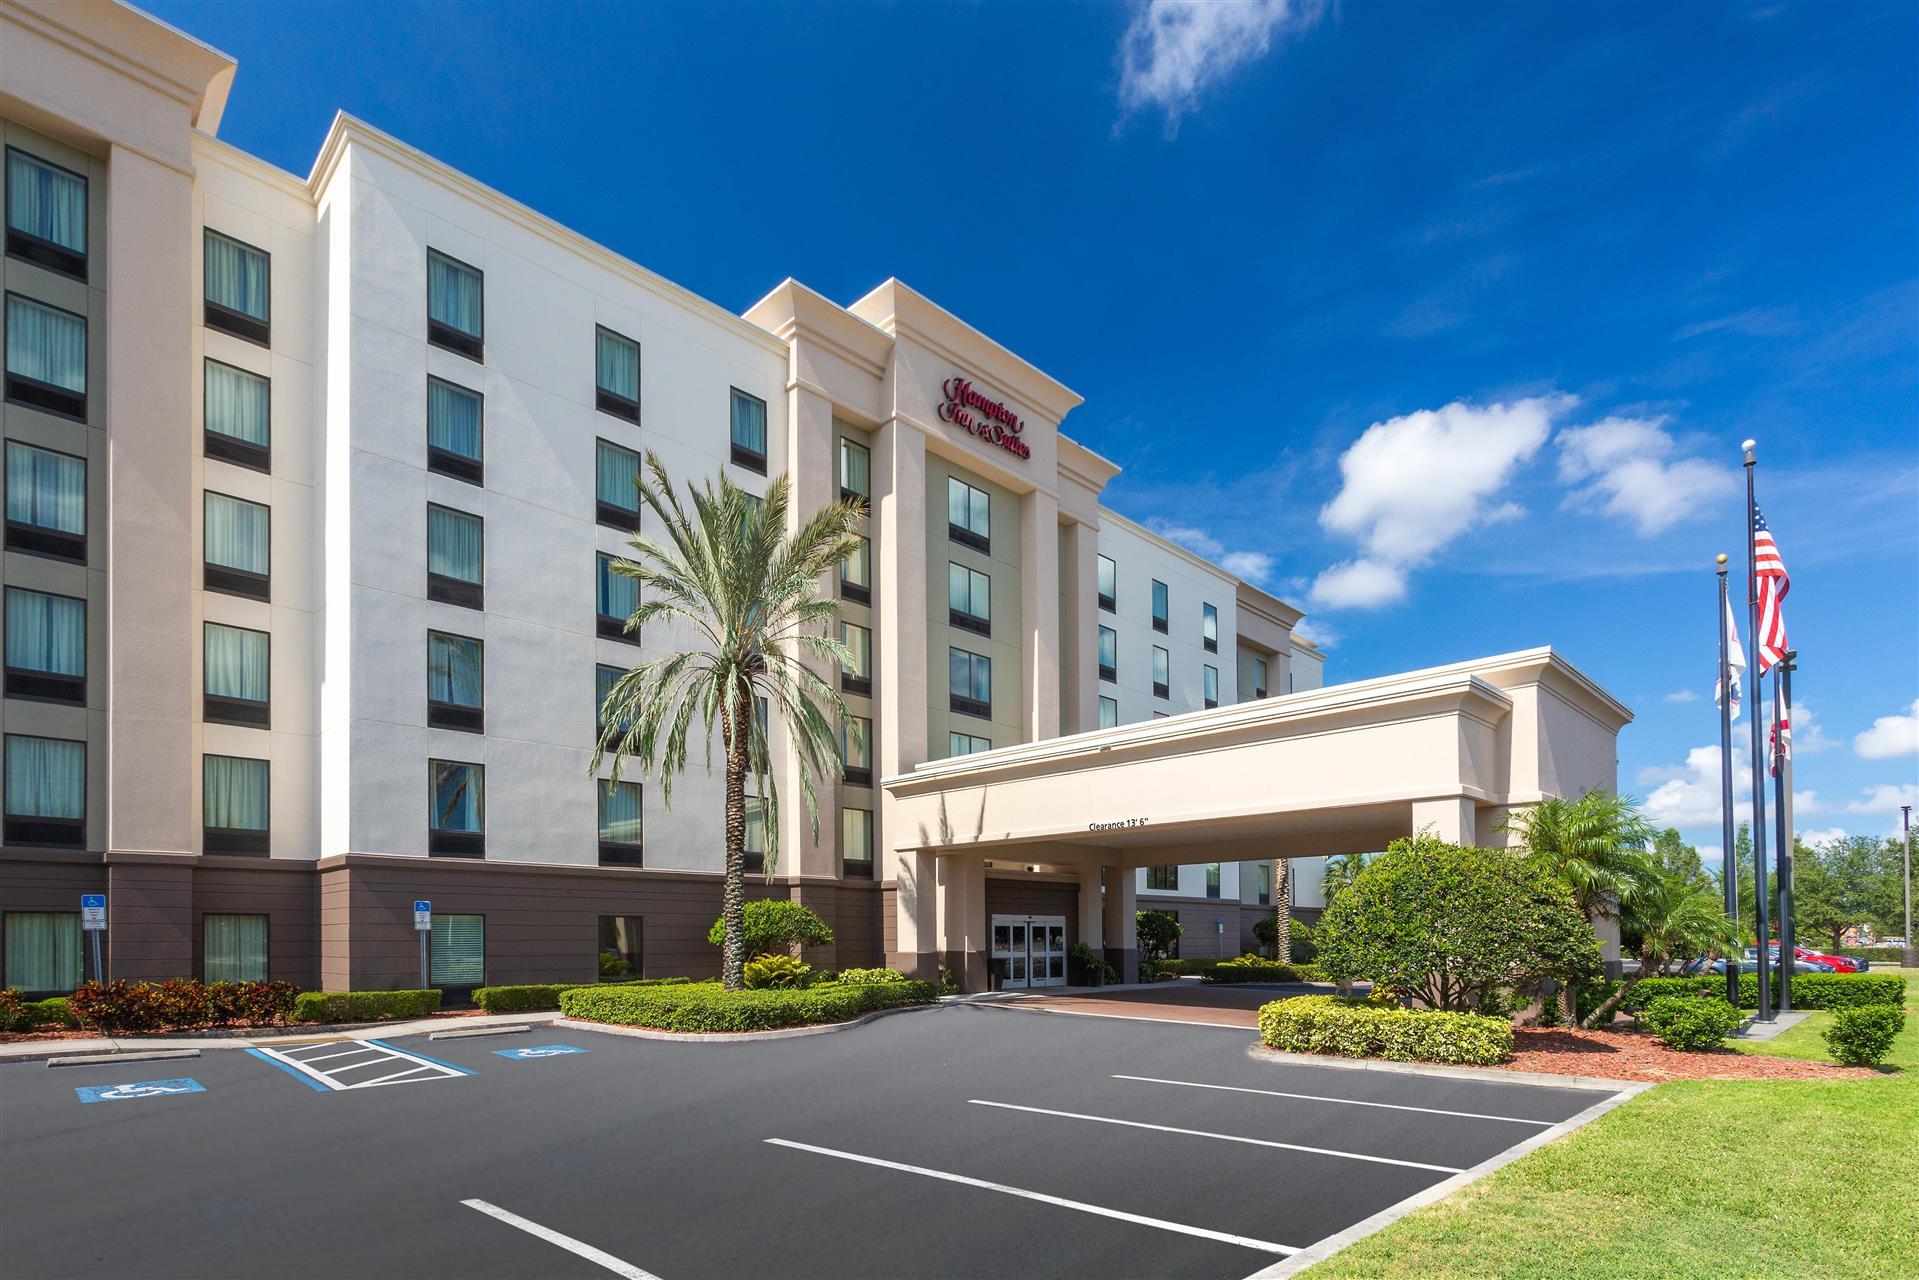 Hampton Inn & Suites Clearwater/St. Petersburg-Ulmerton Road, FL in Clearwater, FL